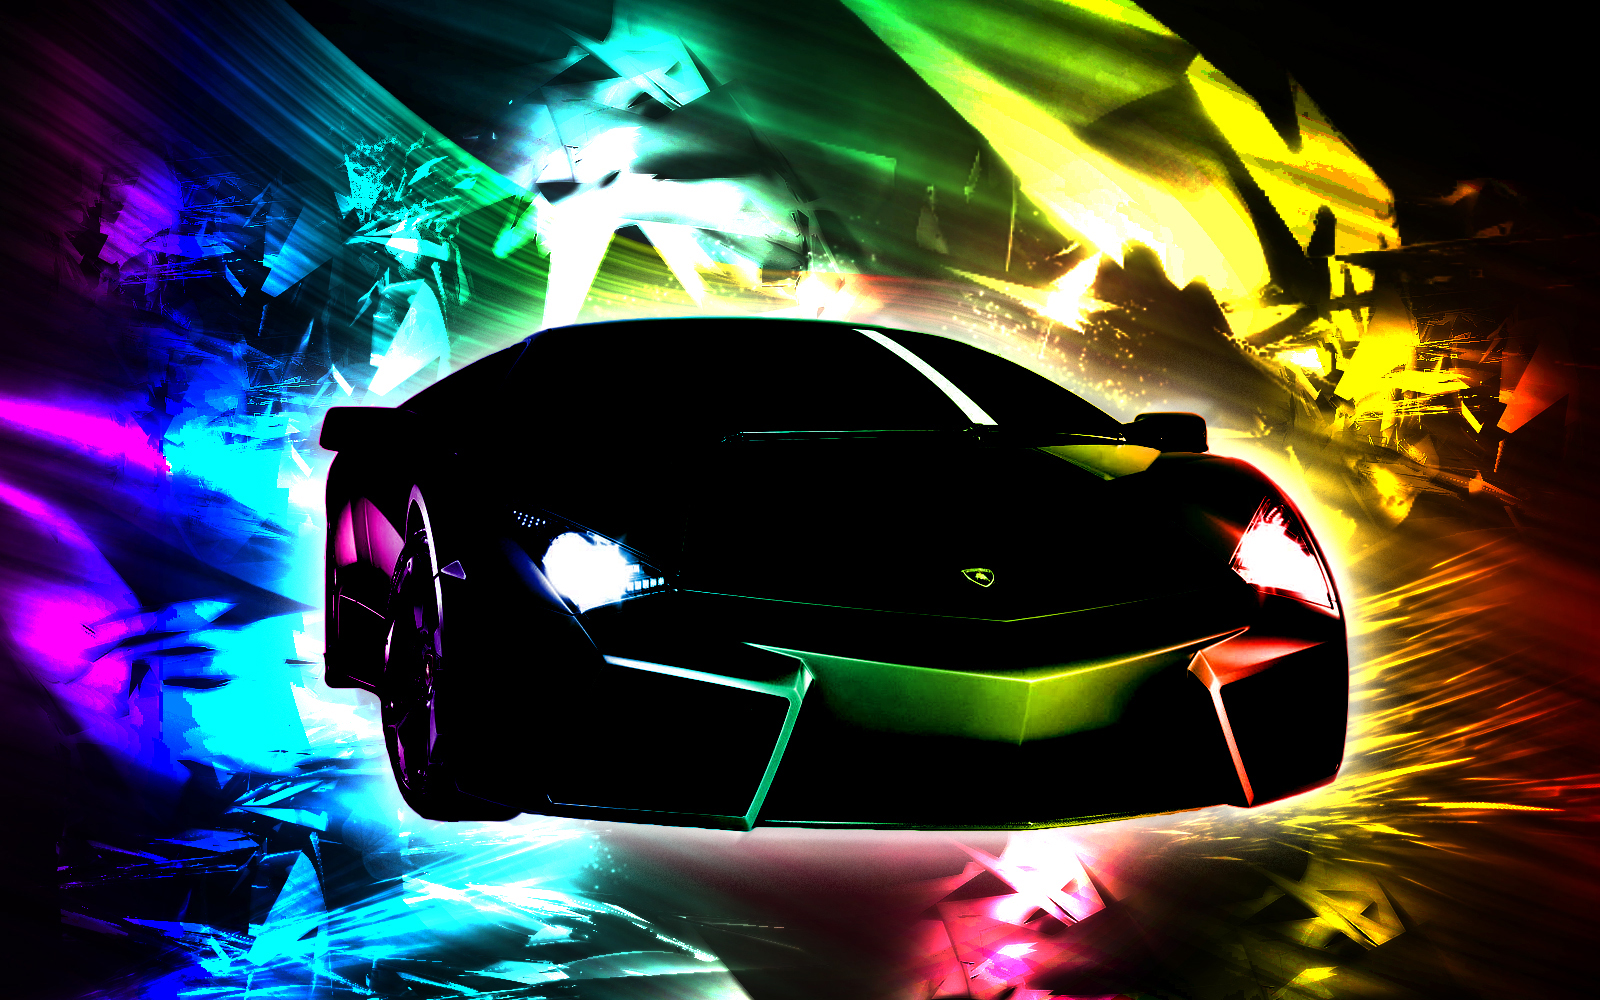 Rainbow Cool Lamborghini Wallpaper Sports Car